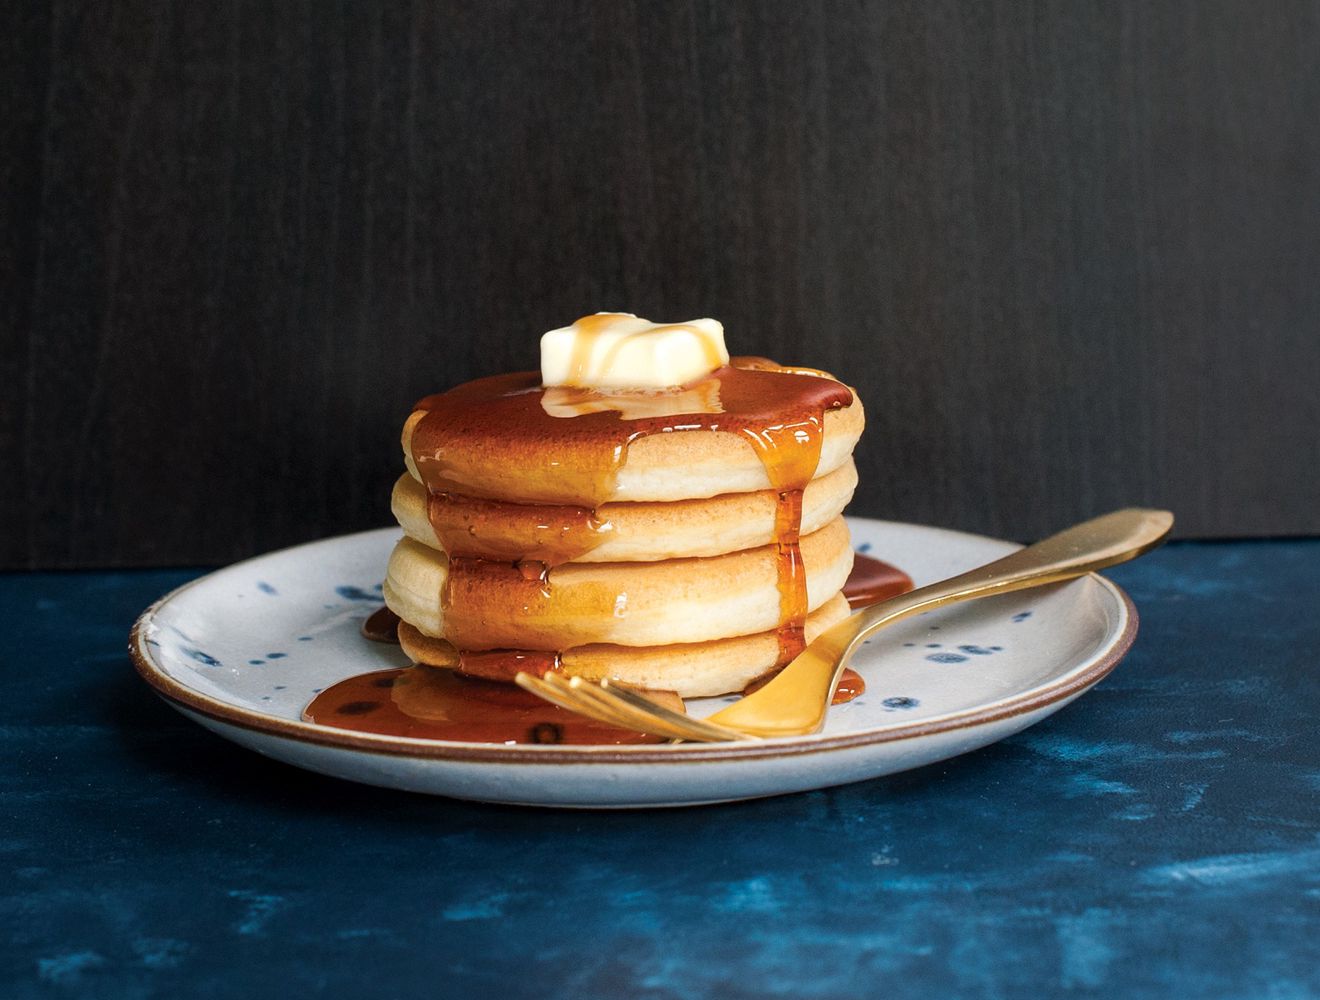 Migliore Macchina per Pancake Automatica – Scelta e Recensioni